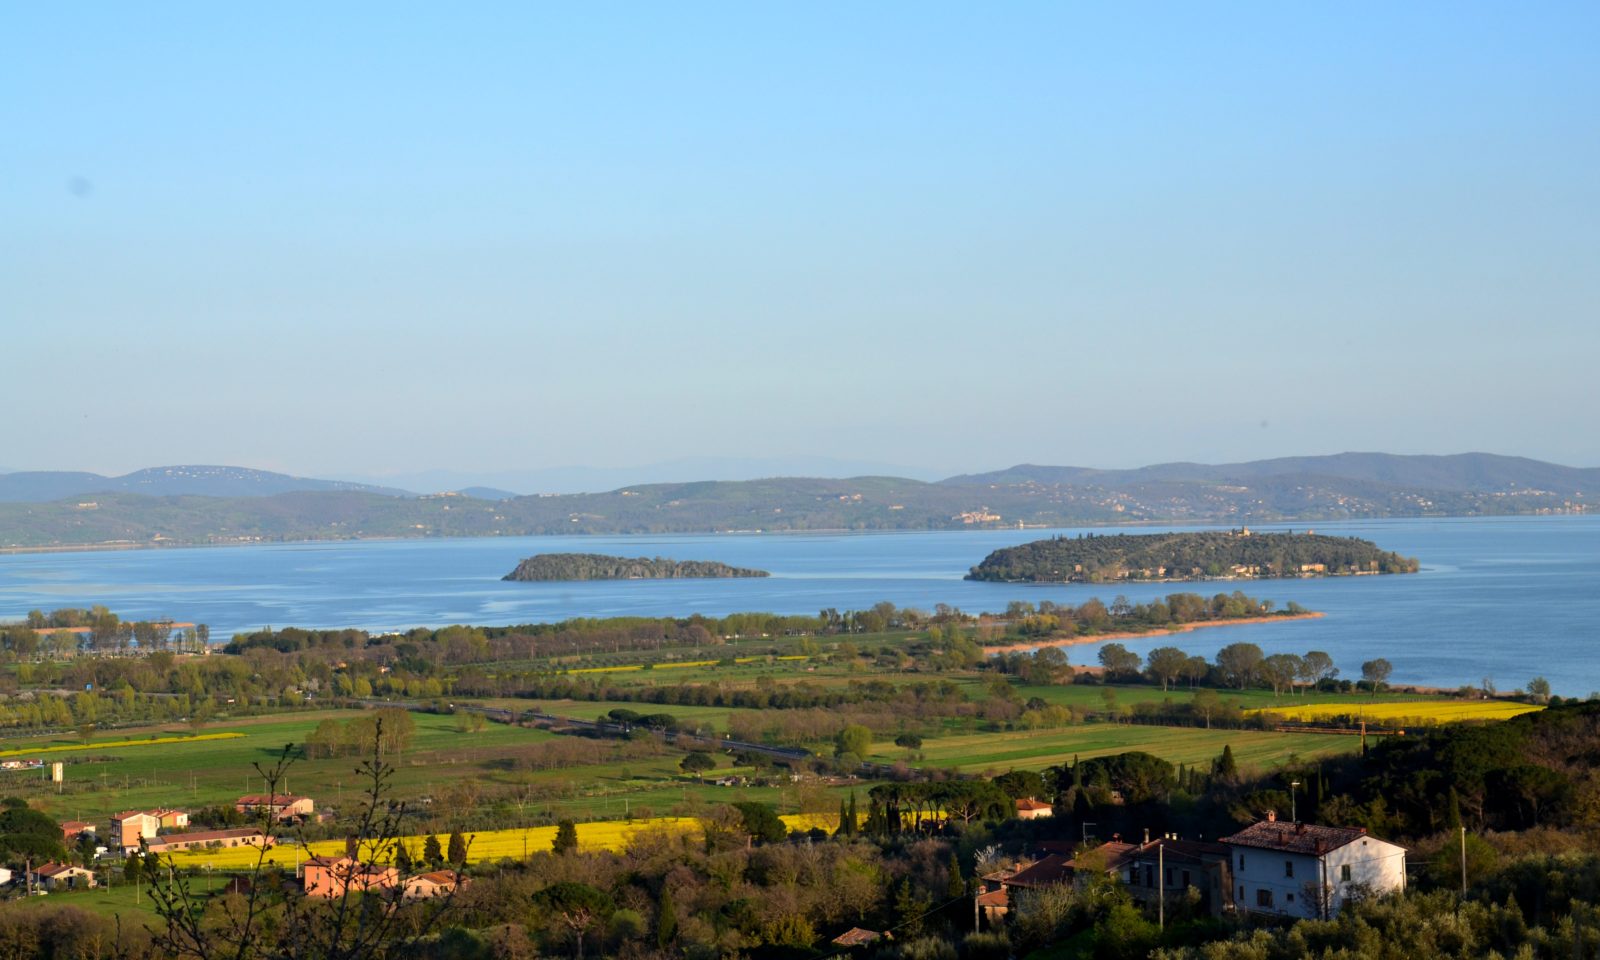 Lake Trasimeno, Valdichiana and Siena